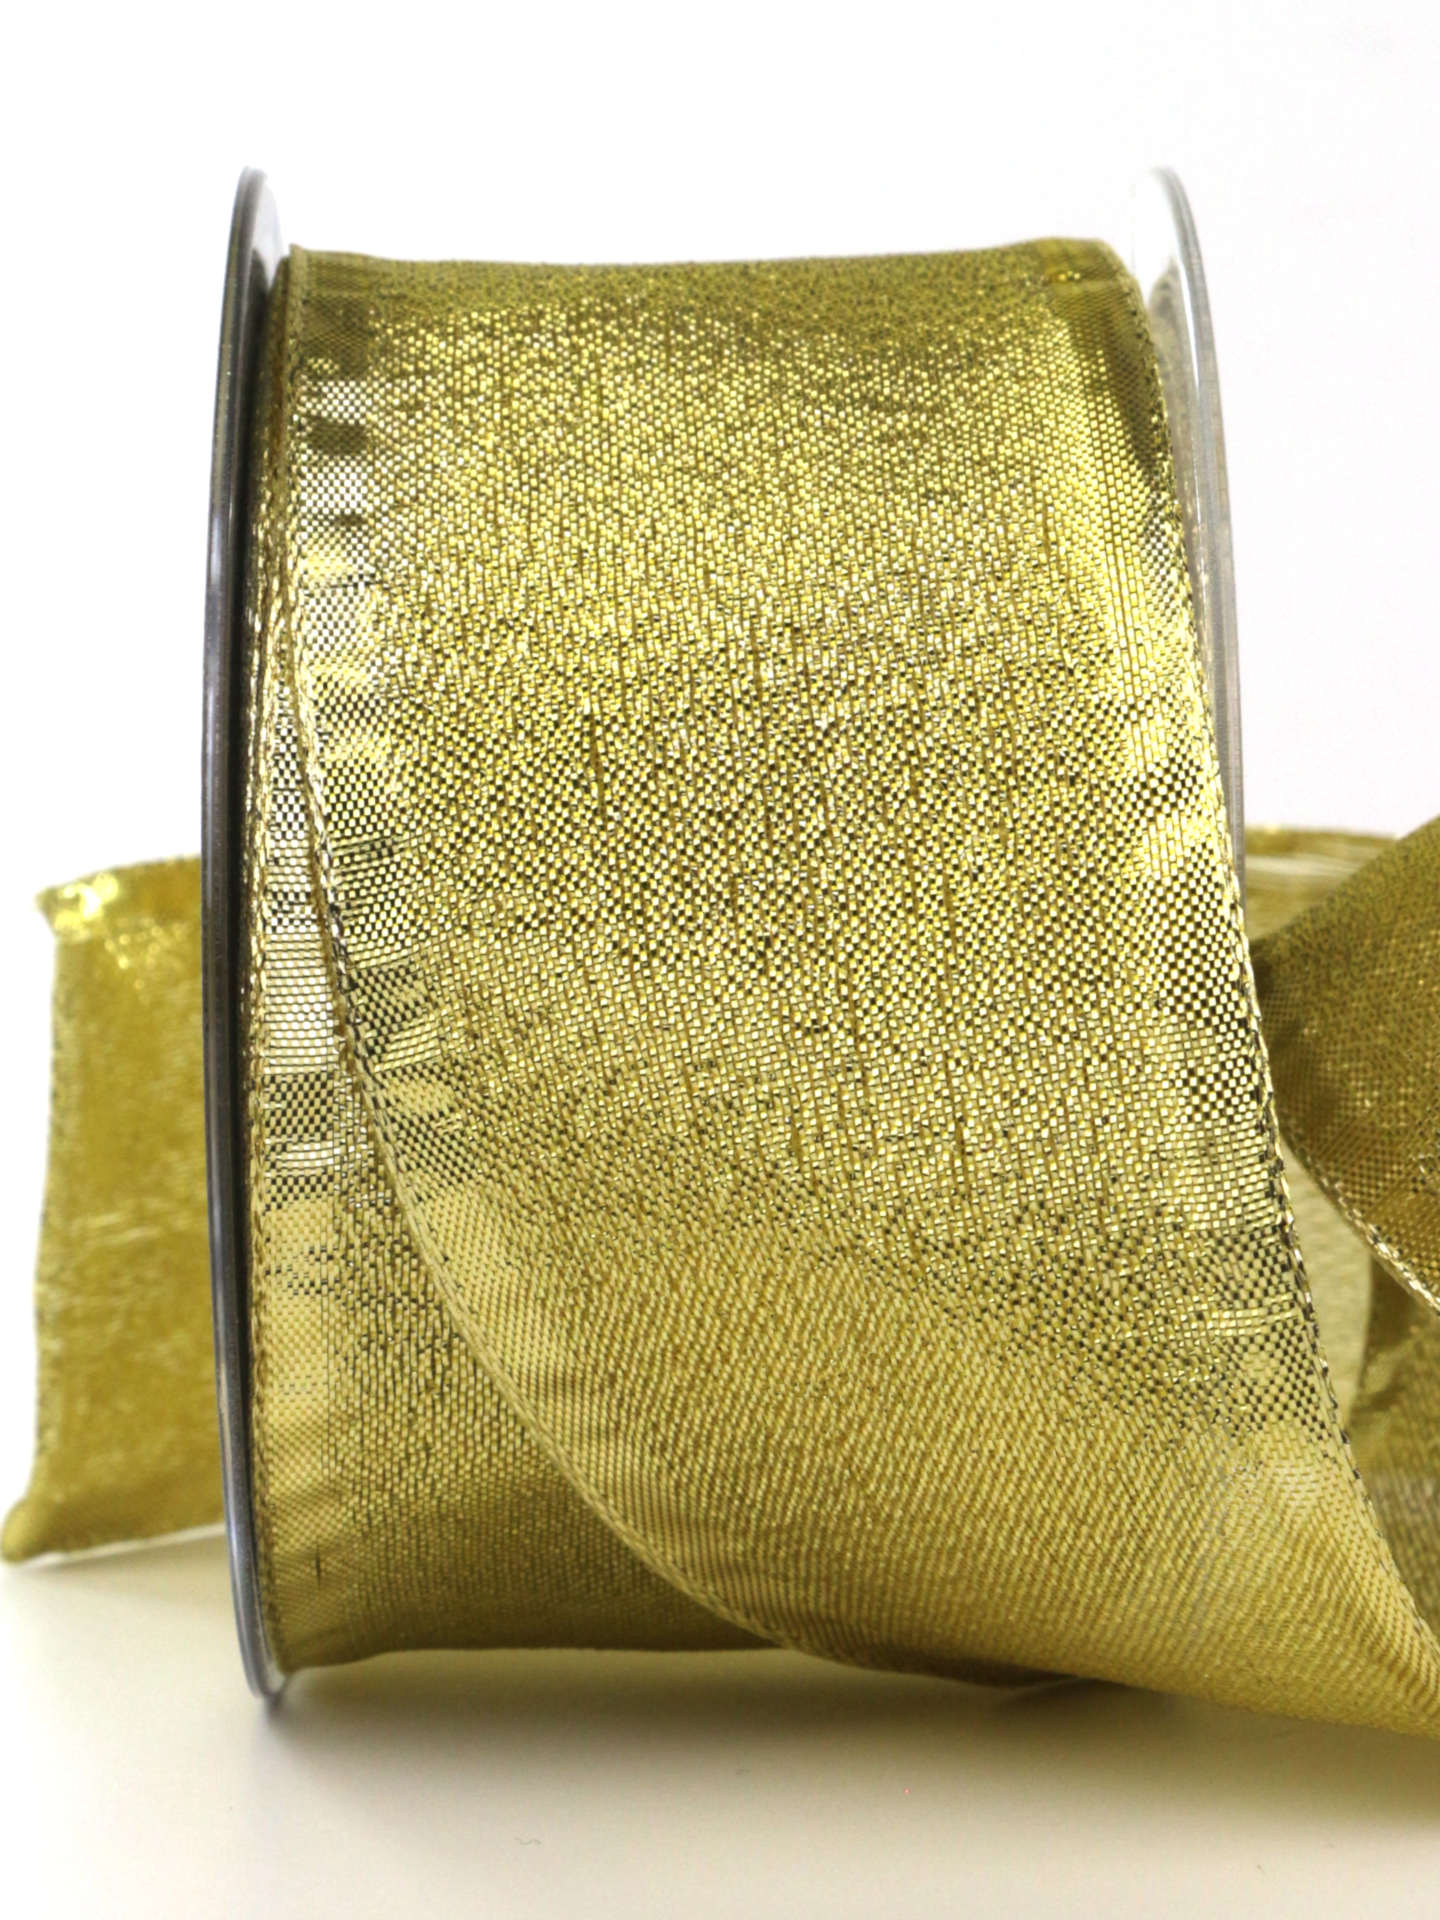 Goldband „Brokat“, gold, 60 mm breit, 25 m Rolle - geschenkband-weihnachten-dauersortiment, weihnachtsband, geschenkband-weihnachten, weihnachtsbaender